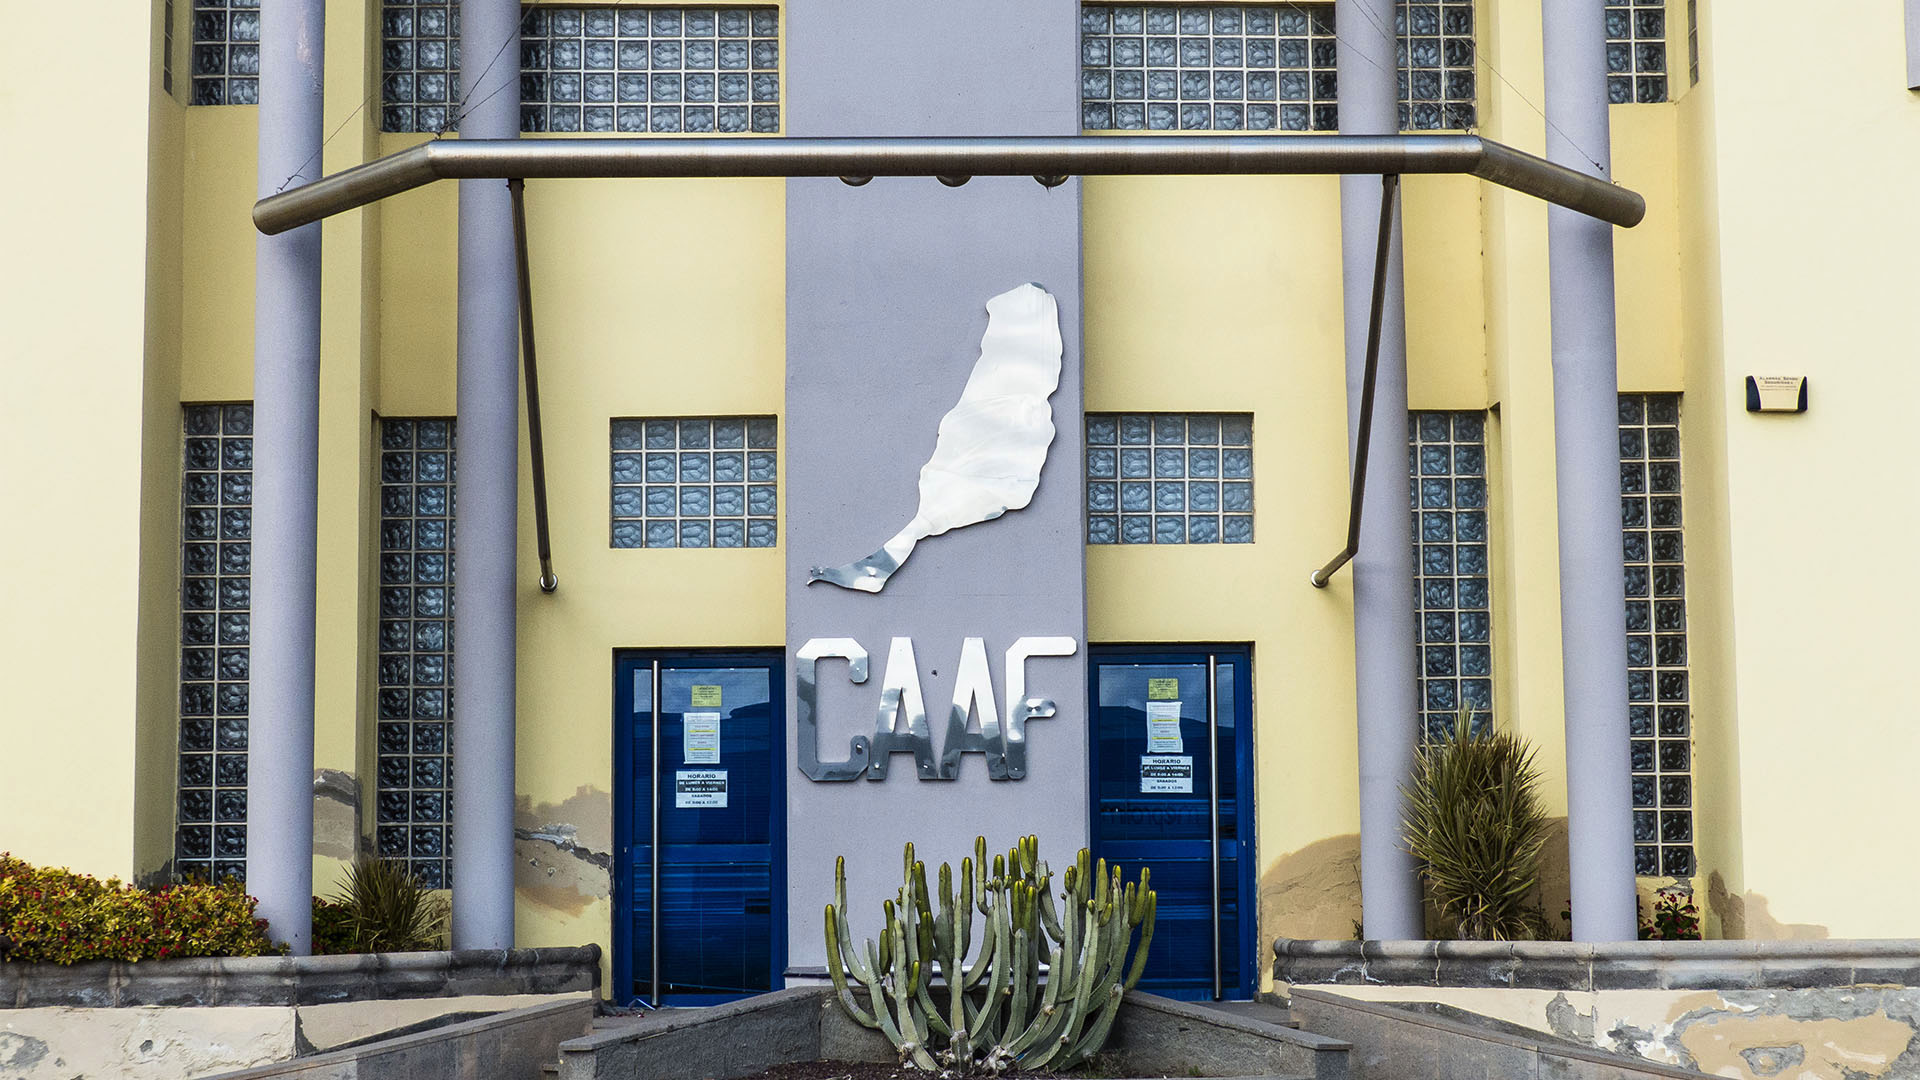 CAAF Consorcio de Abastecimiento de Agua a Fuerteventura in Puerto del Rosario.